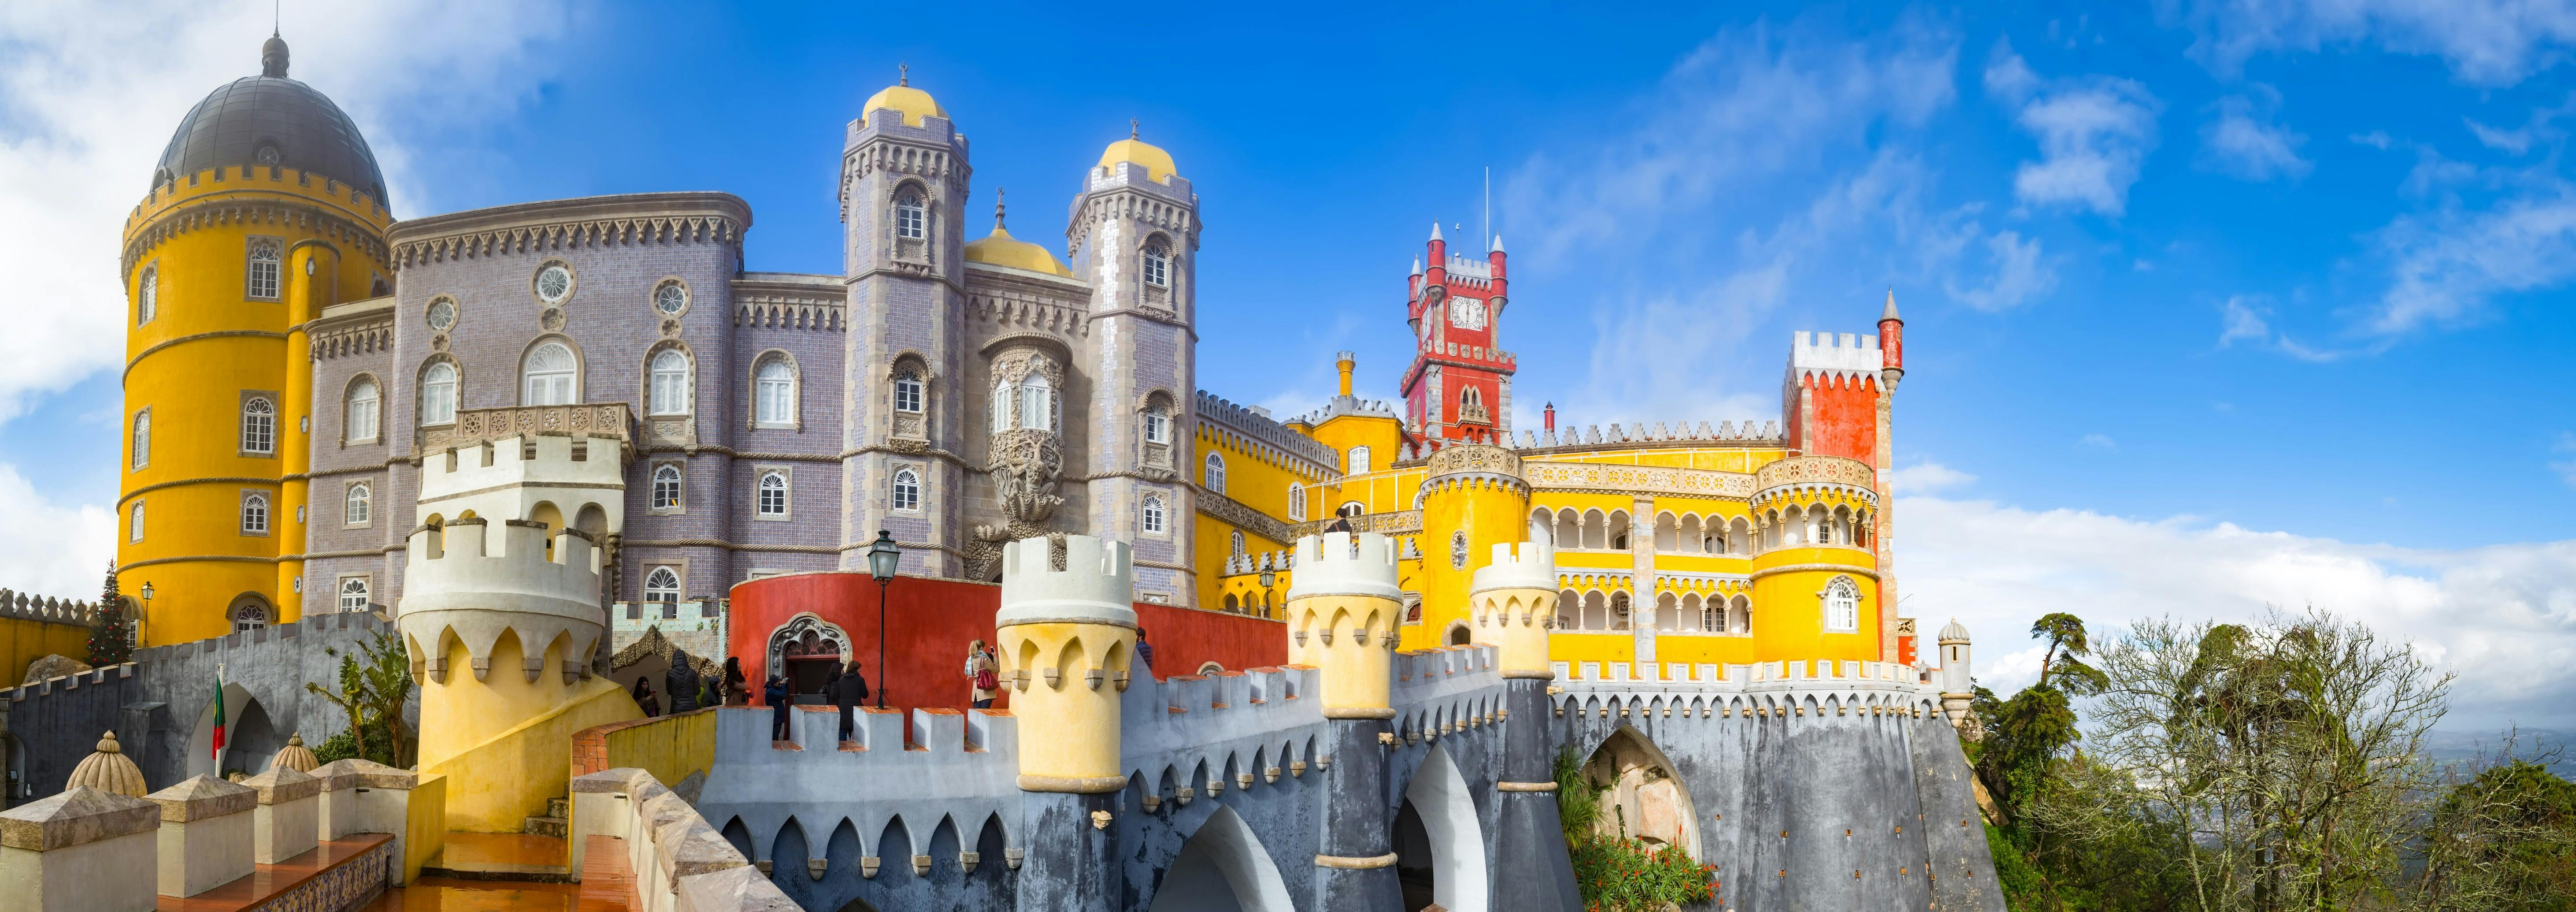 Excursão privada a Sintra a partir de Lisboa